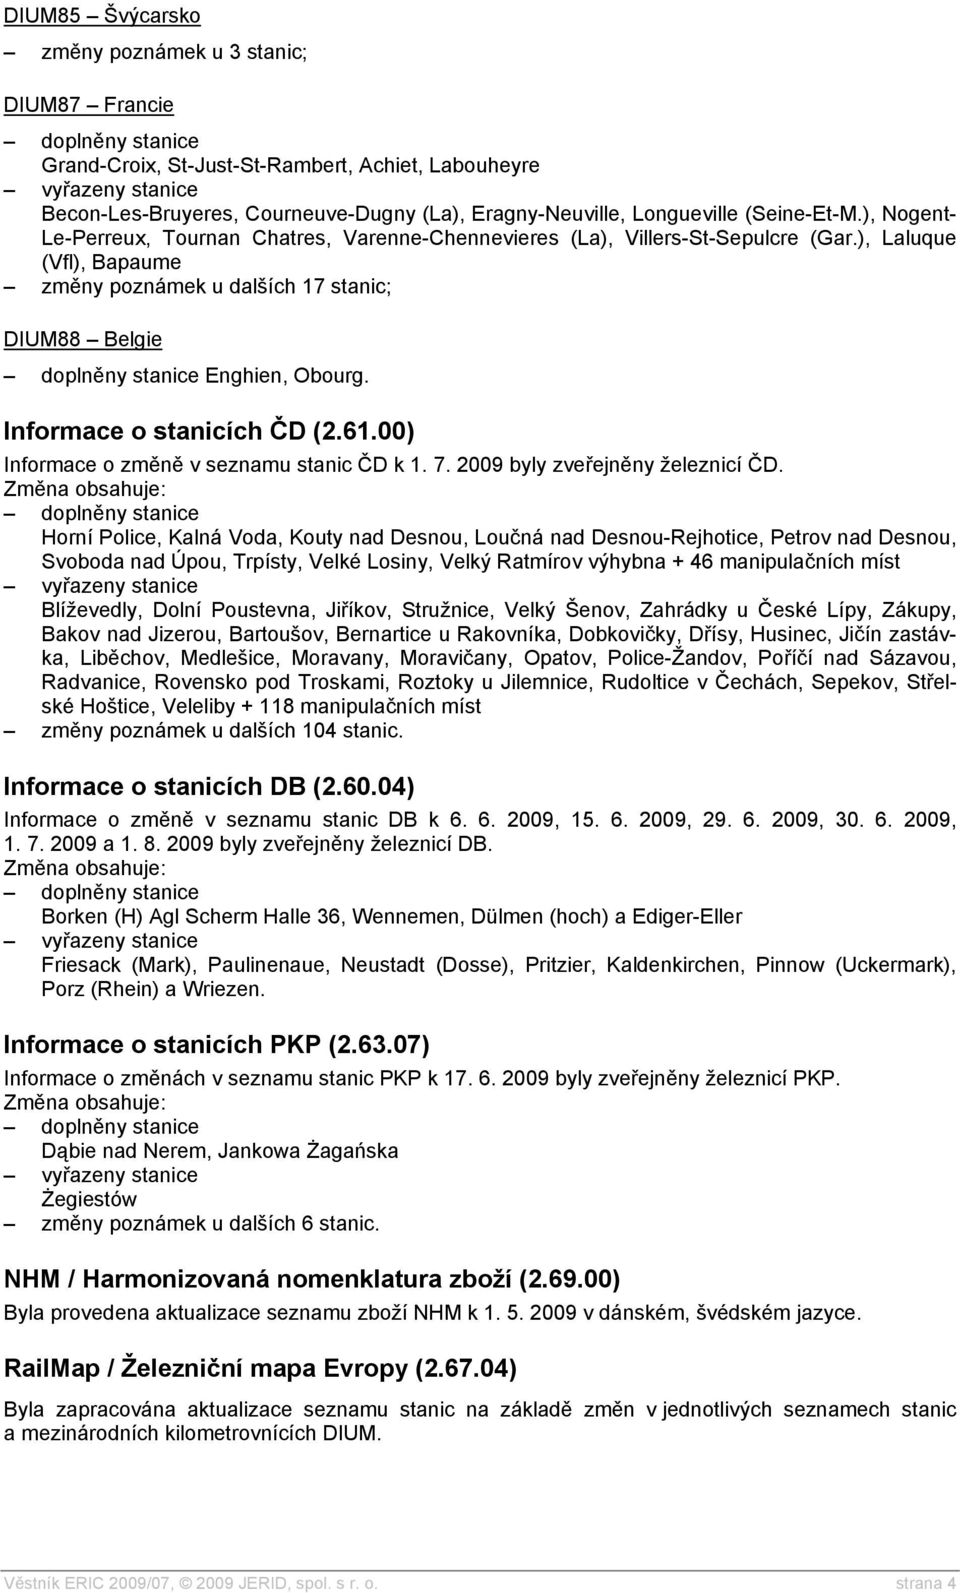 Informace o stanicích ČD (2.61.00) Informace o změně v seznamu stanic ČD k 1. 7. 2009 byly zveřejněny železnicí ČD.